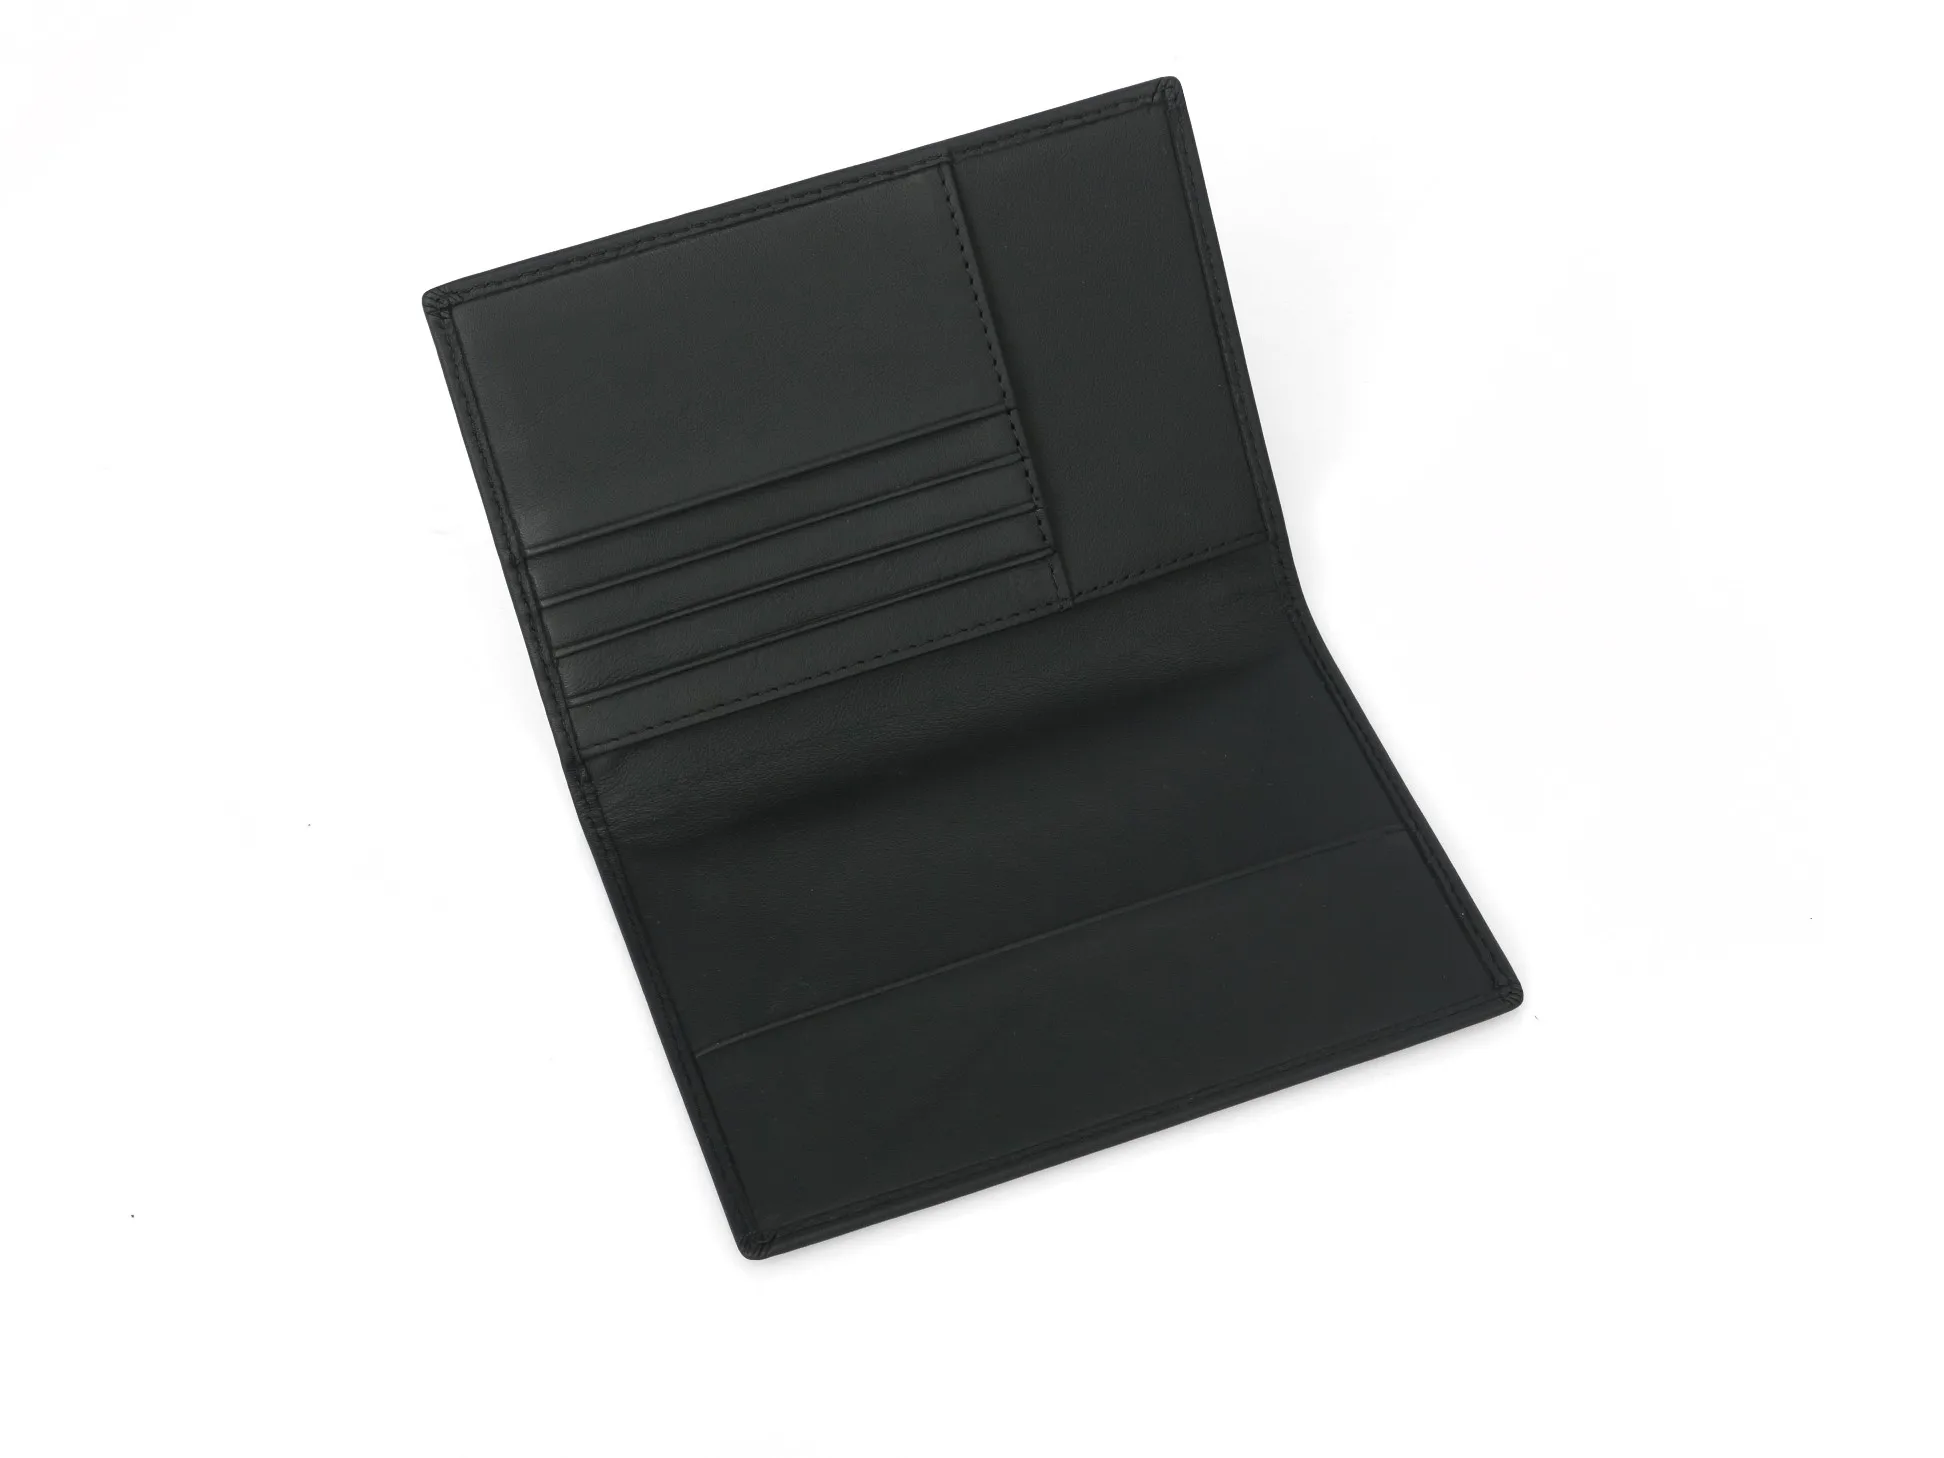 Кошелек из углеродного волокна для карт и паспорта новый RFID Бумажник простой практичный